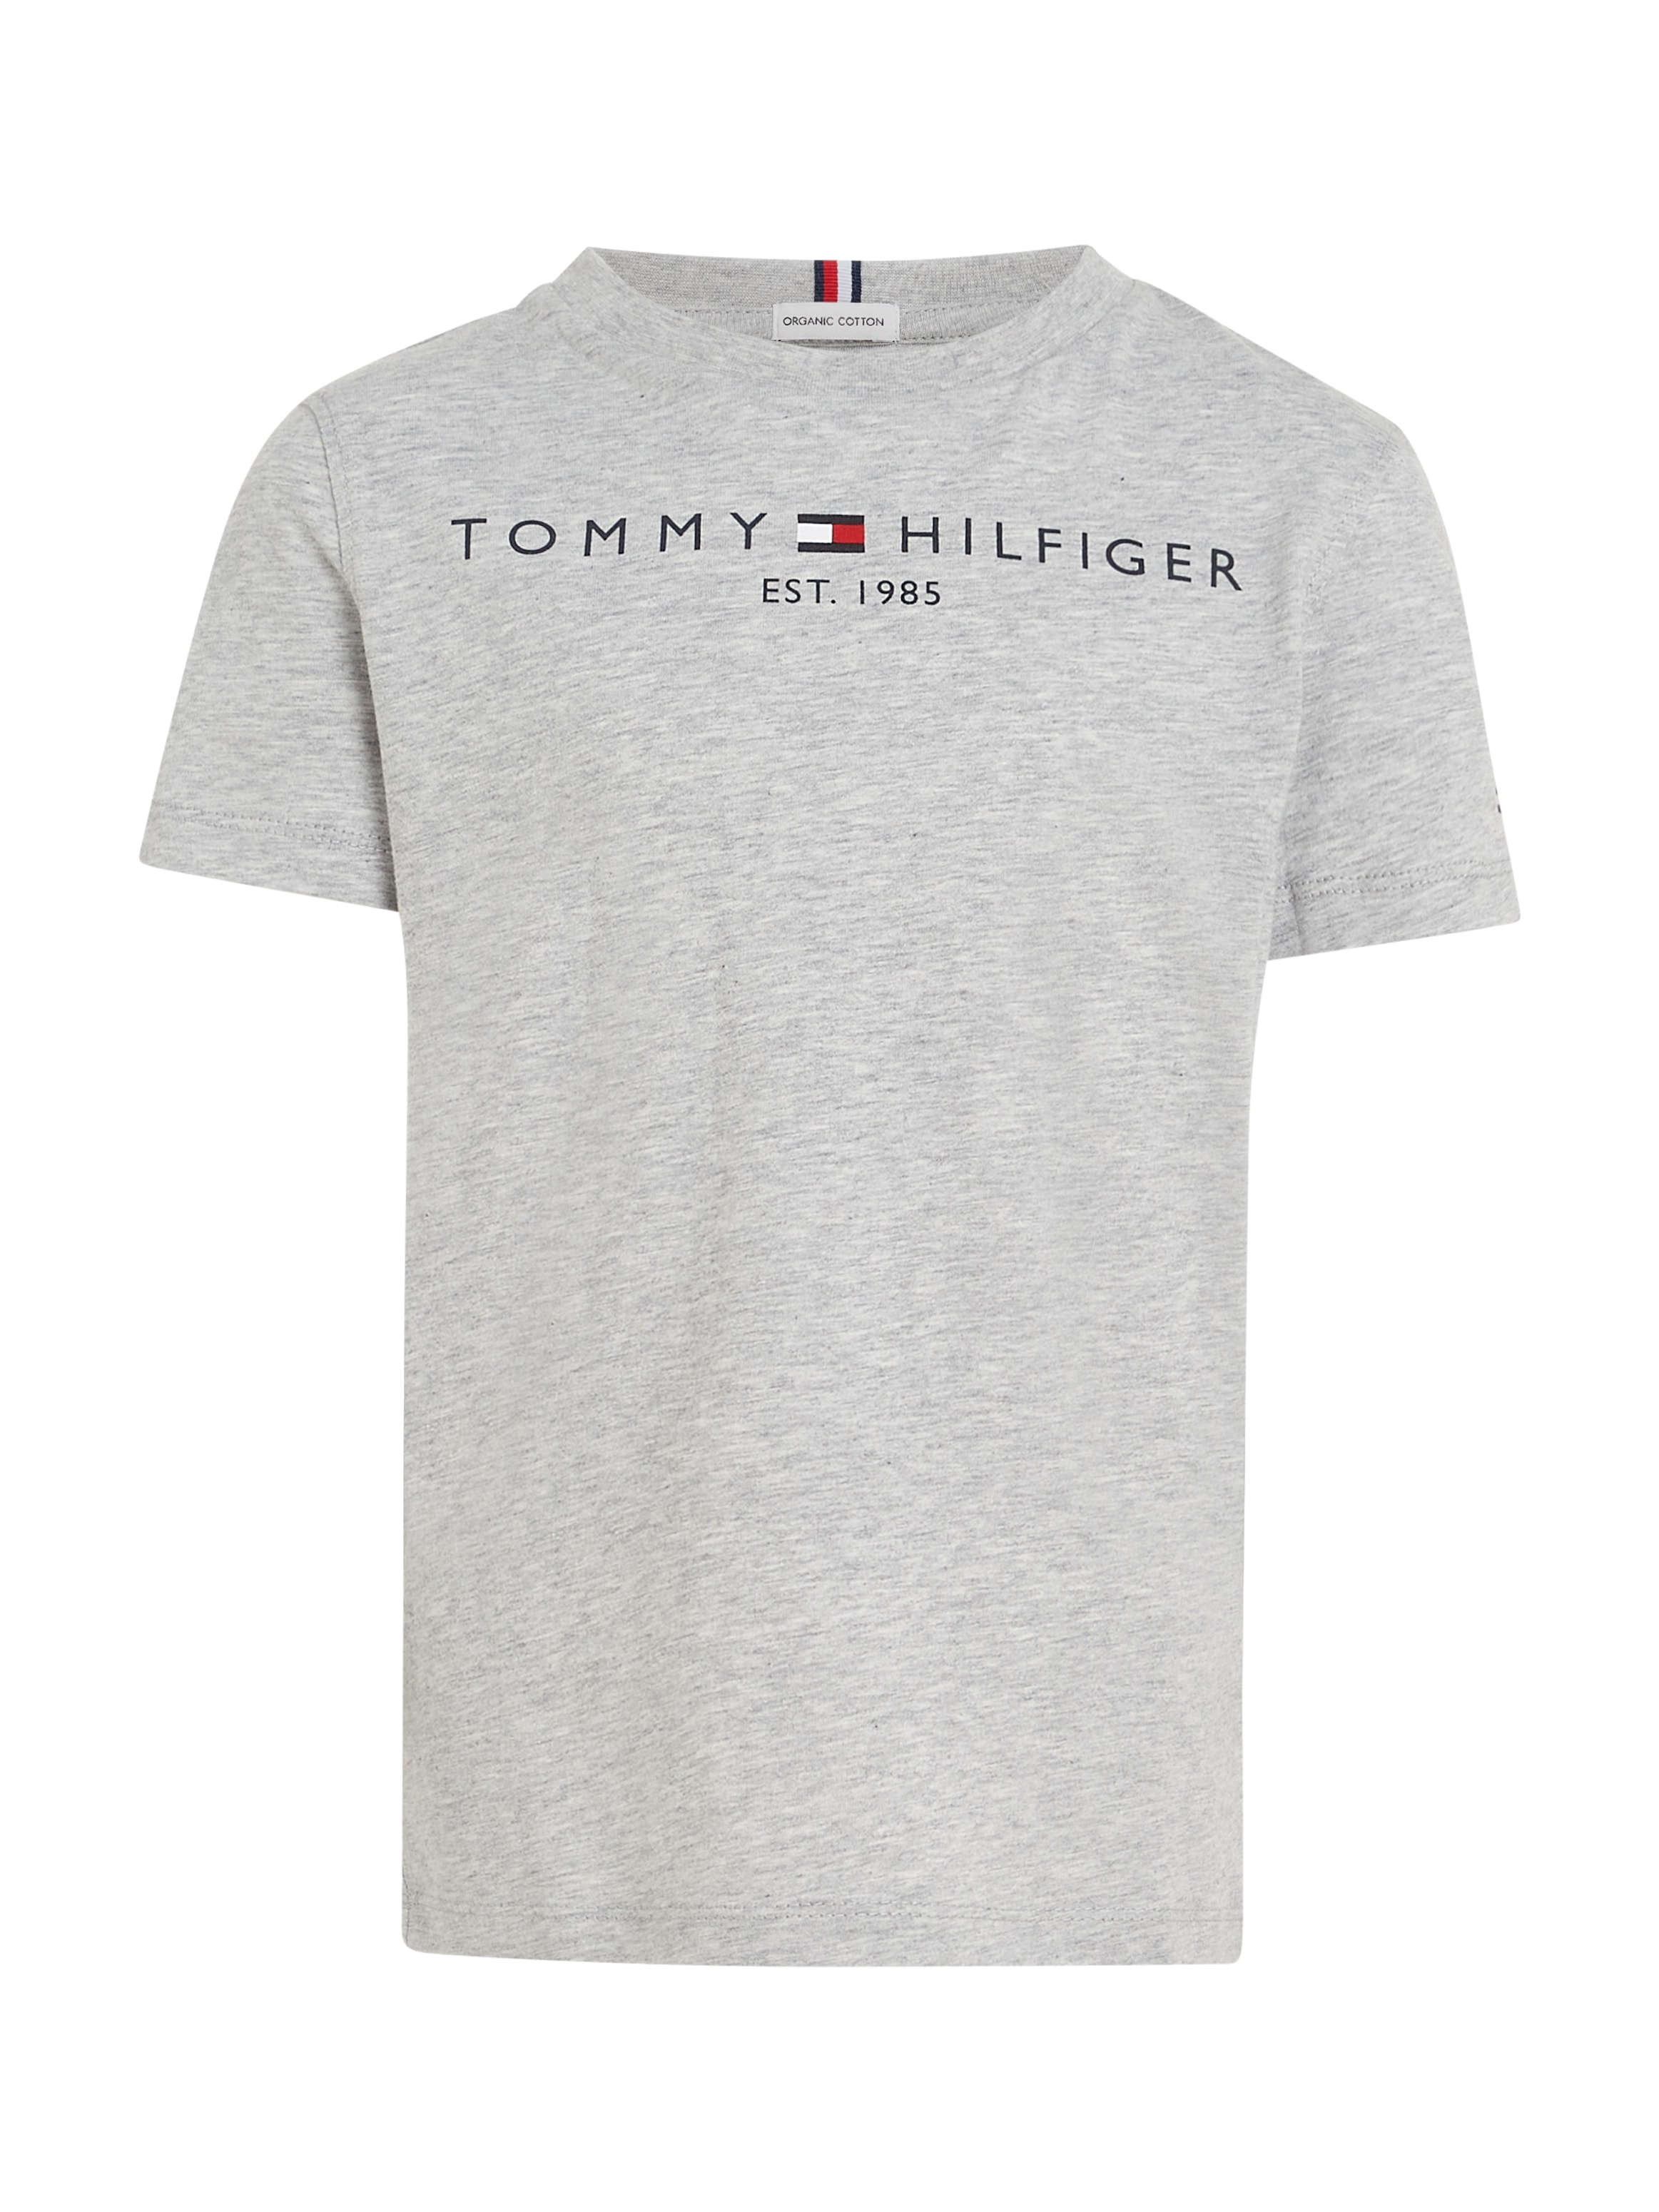 Tommy Hilfiger Mädchen T-Shirt »ESSENTIAL und Kinder Junior Kids bestellen Jungen TEE«, MiniMe,für online